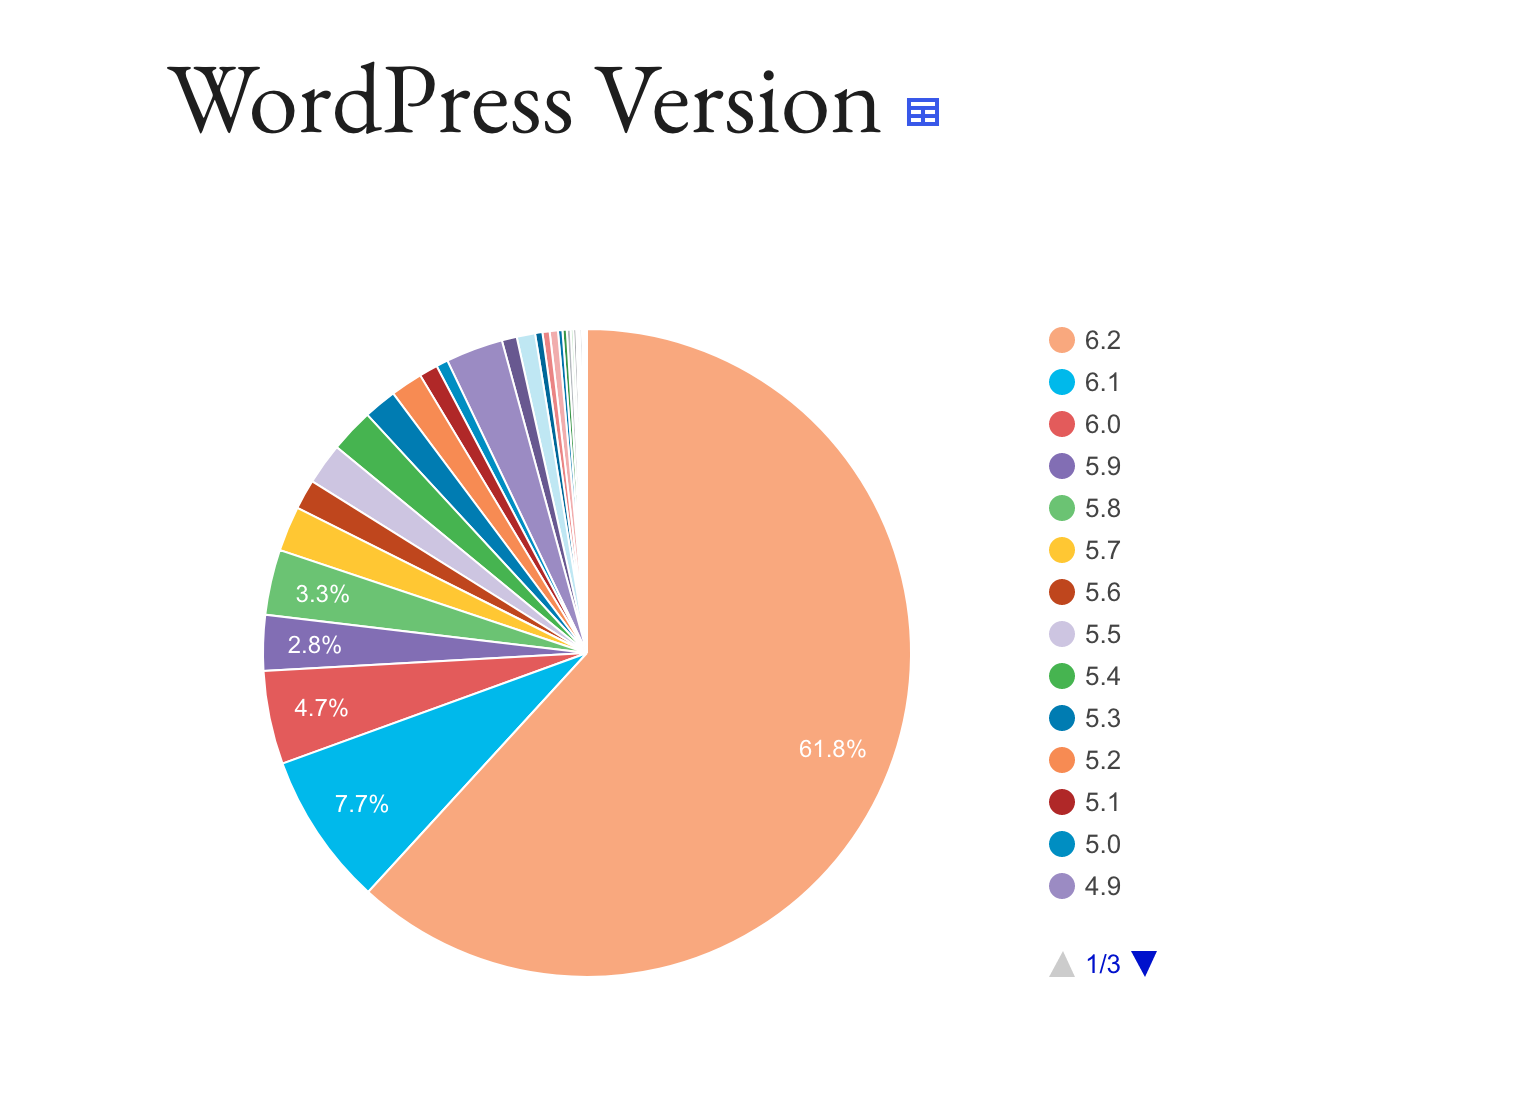 Présentation des versions de WordPress utilisées.